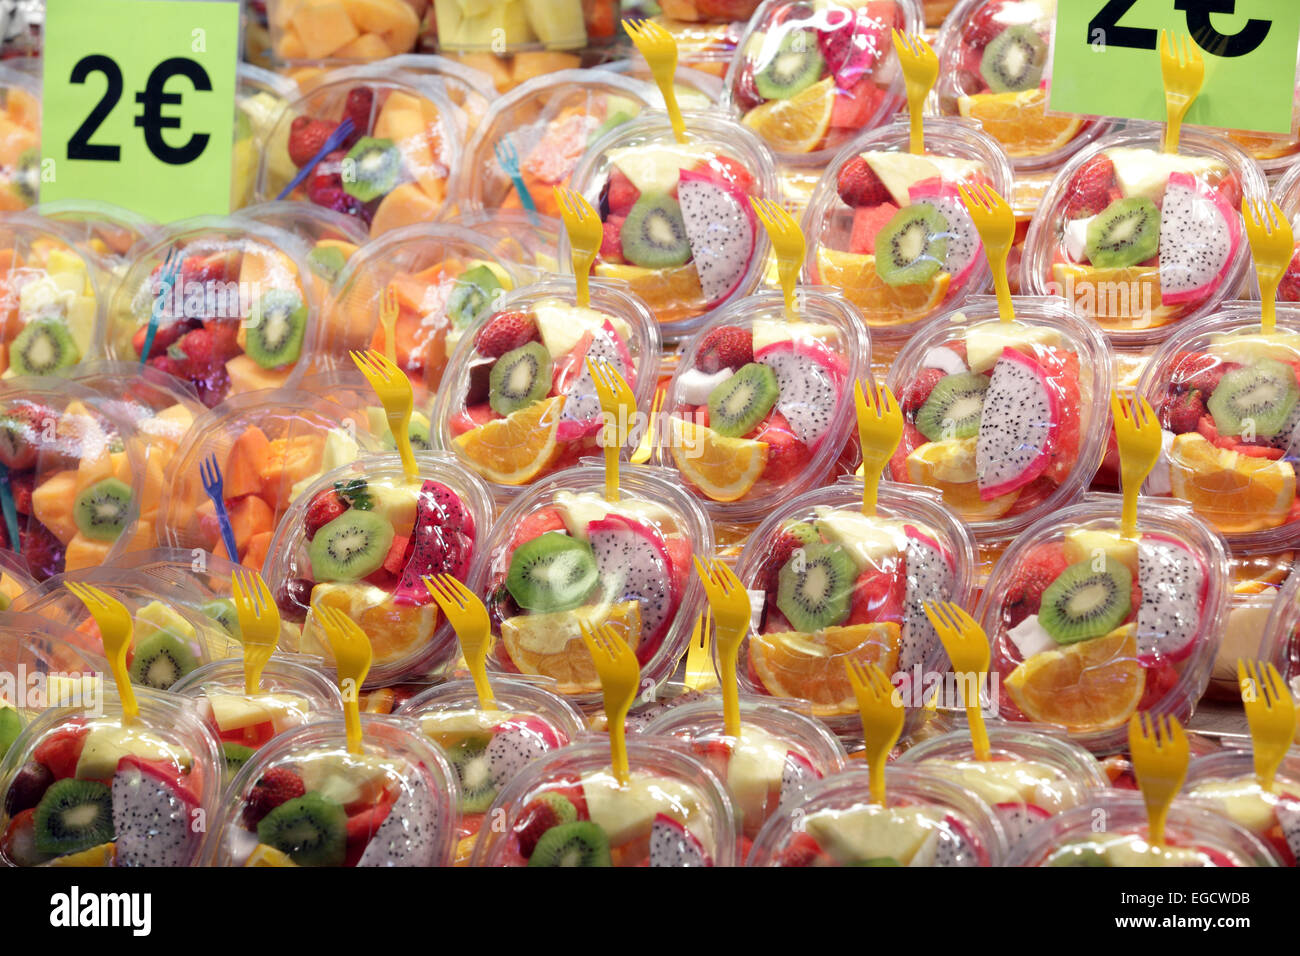 Leuchtend bunte frische gesunde Obstsalate für Verkauf Lebensmittel-Markt, La Rambas, Barcelona, Spanien Stockfoto